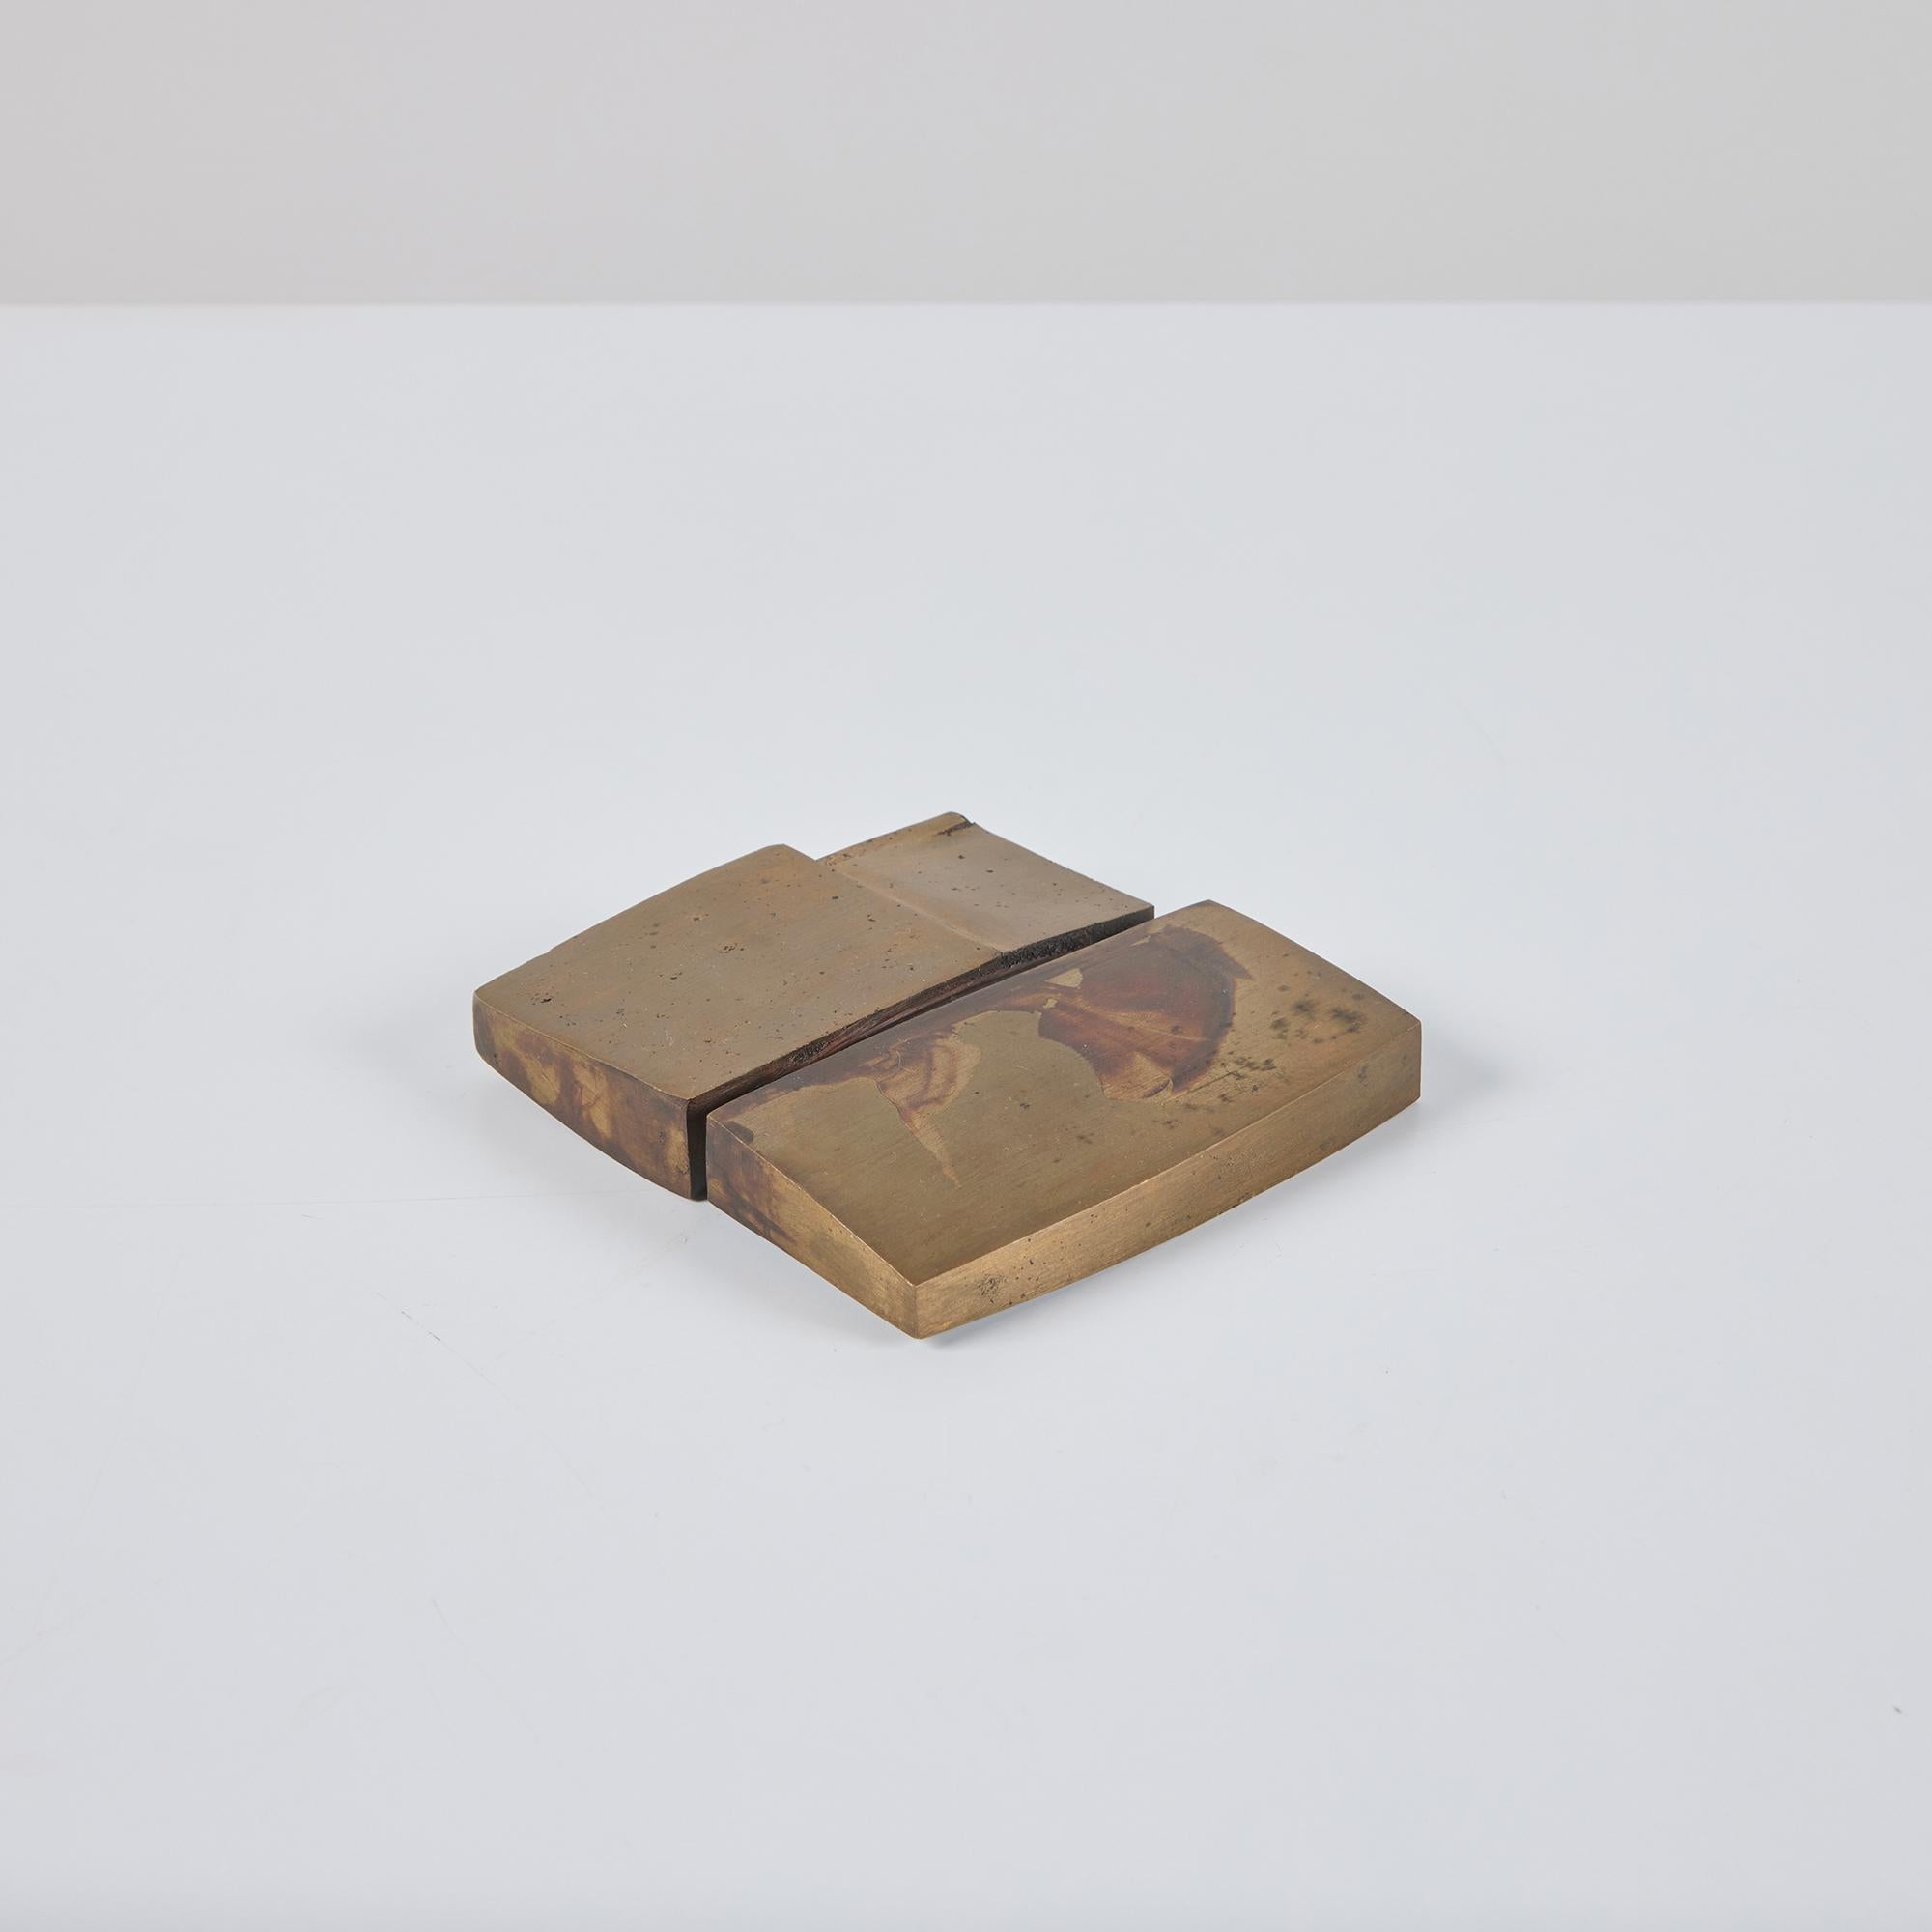 Sculpture abstraite ou presse-papier en laiton de l'artiste David L. Deming c.1969, USA. Cet objet lourd a des formes carrées et rectangulaires qui s'emboîtent les unes dans les autres. Il conviendrait parfaitement comme presse-papier de bureau ou